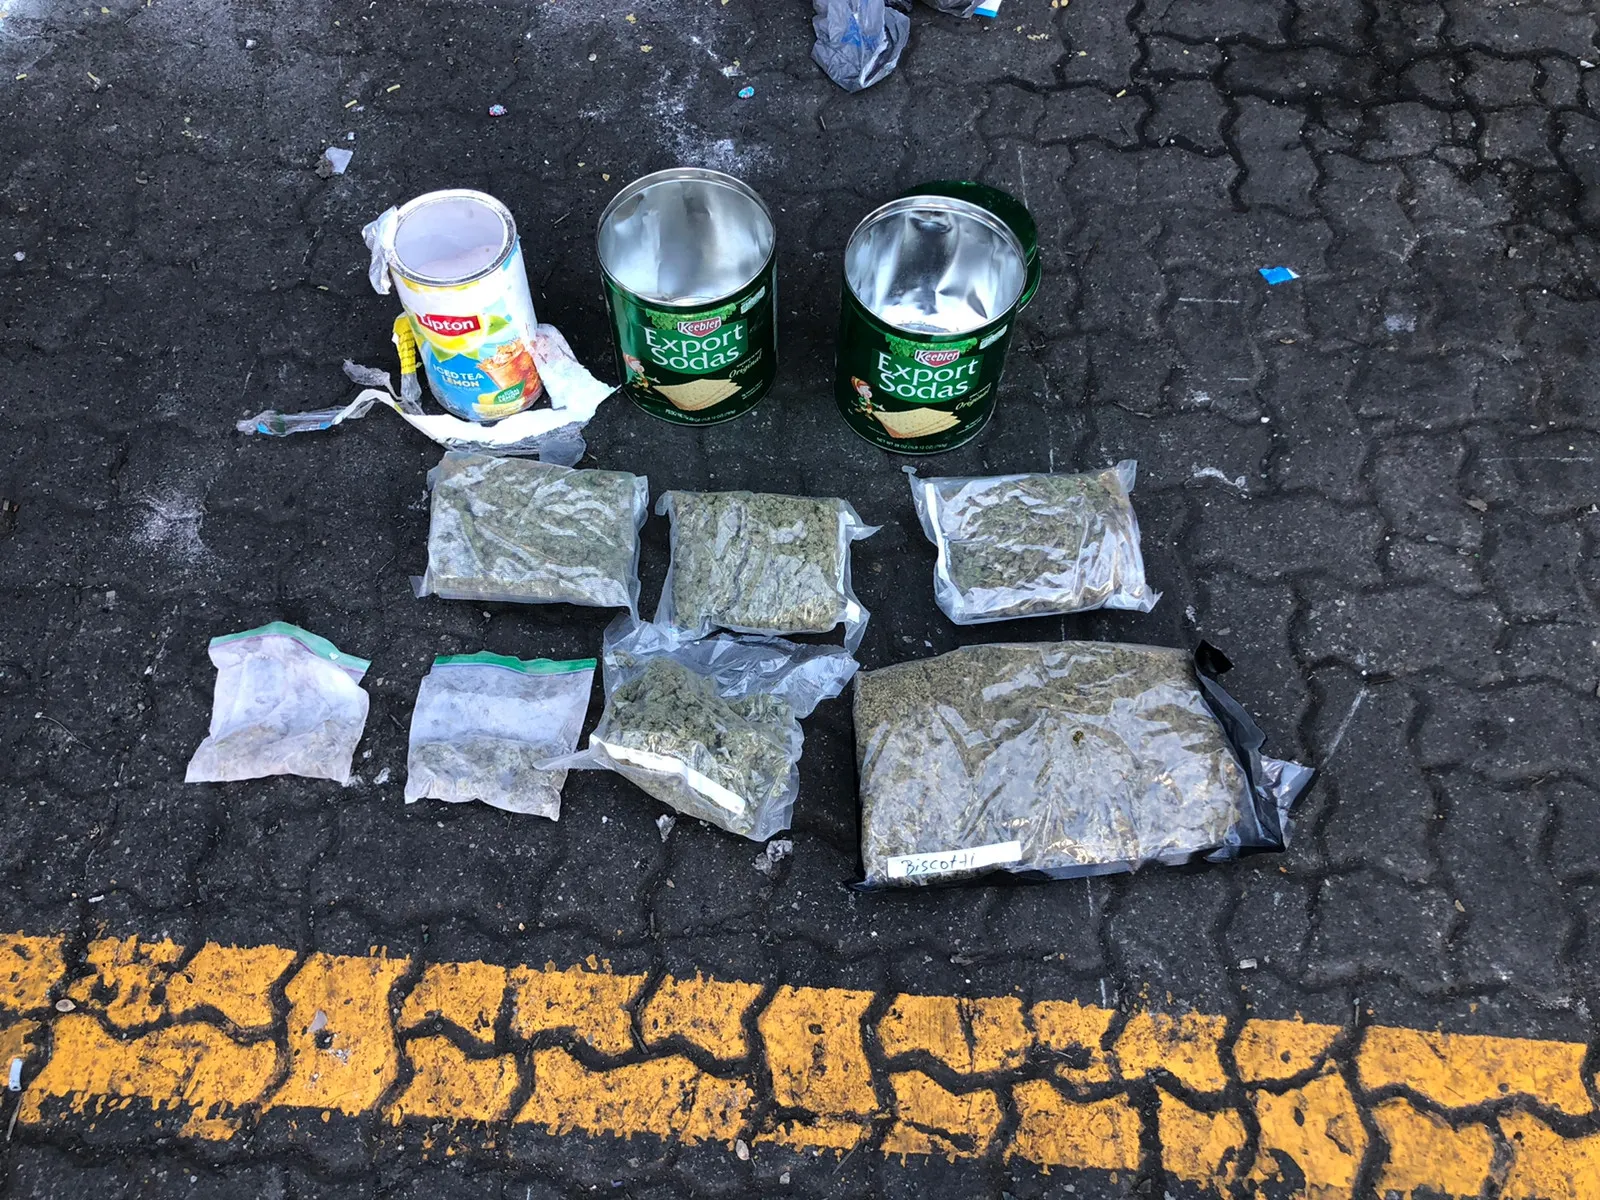 Ocupan siete paquetes de marihuana en latas de té y galletas